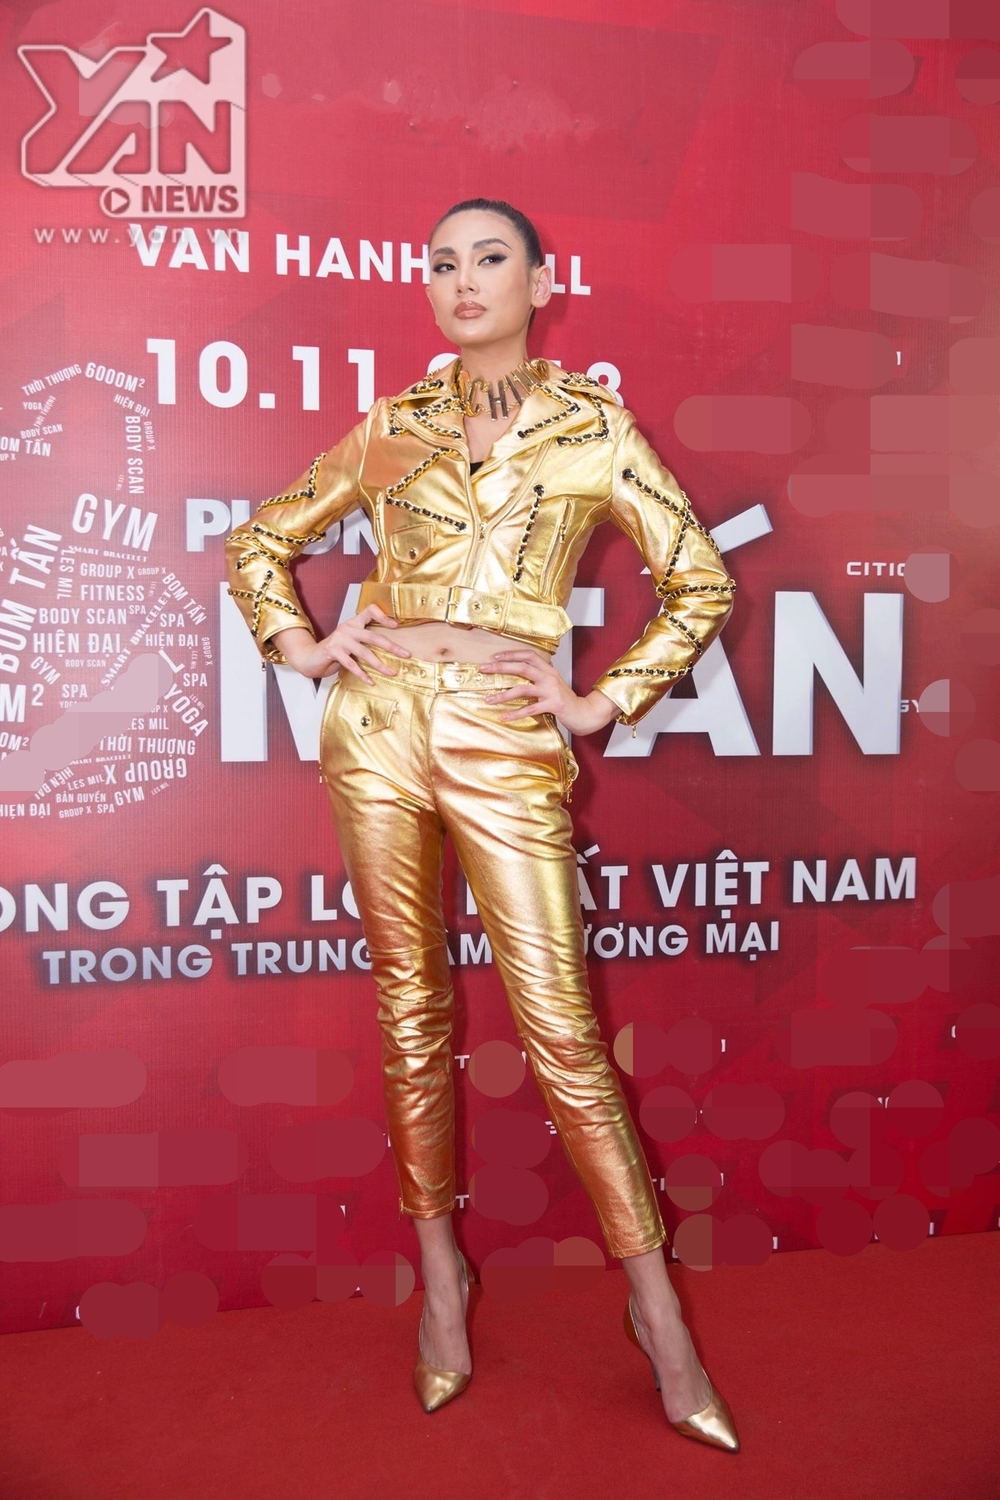 
Tuy nhiên, nhiều fan "ruột" của siêu mẫu cũng đã tinh ý nhận ra chiếc vòng cổ hàng hiệu to bản cực sành điệu được chân dài phối khéo léo với bộ trang phục giống y như của Minh Hằng.